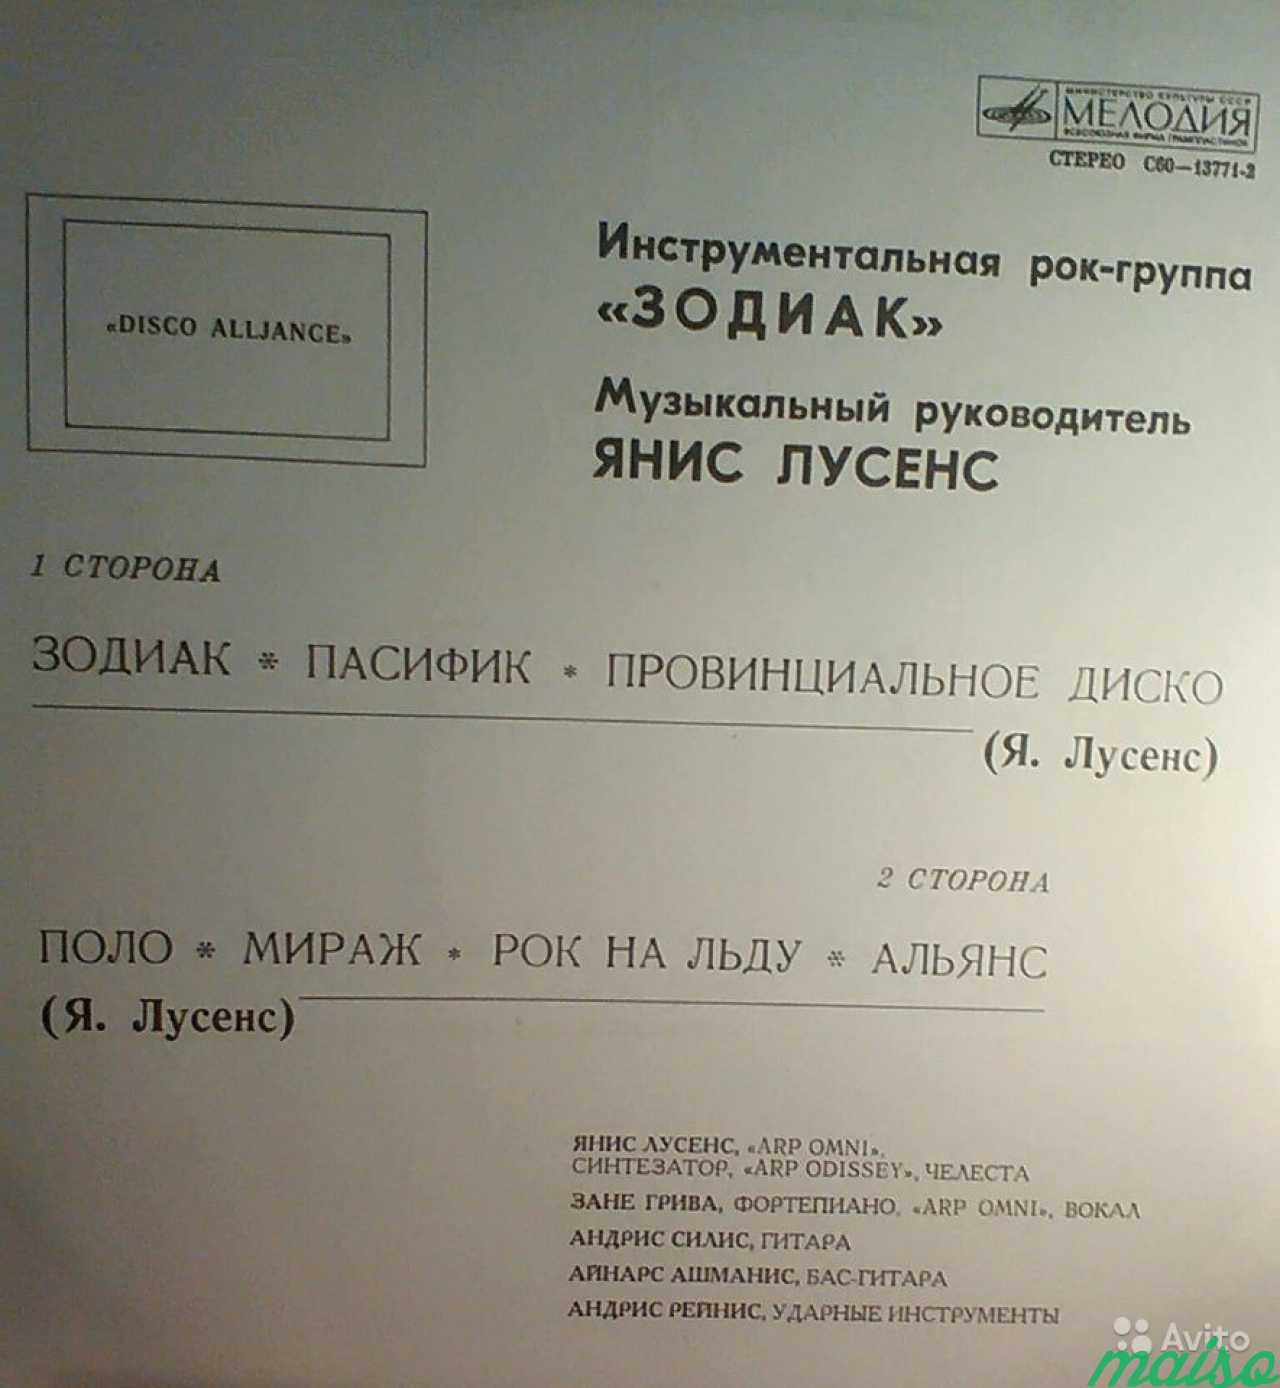 Советские грампластинки фирмы Мелодия в Санкт-Петербурге. Фото 4